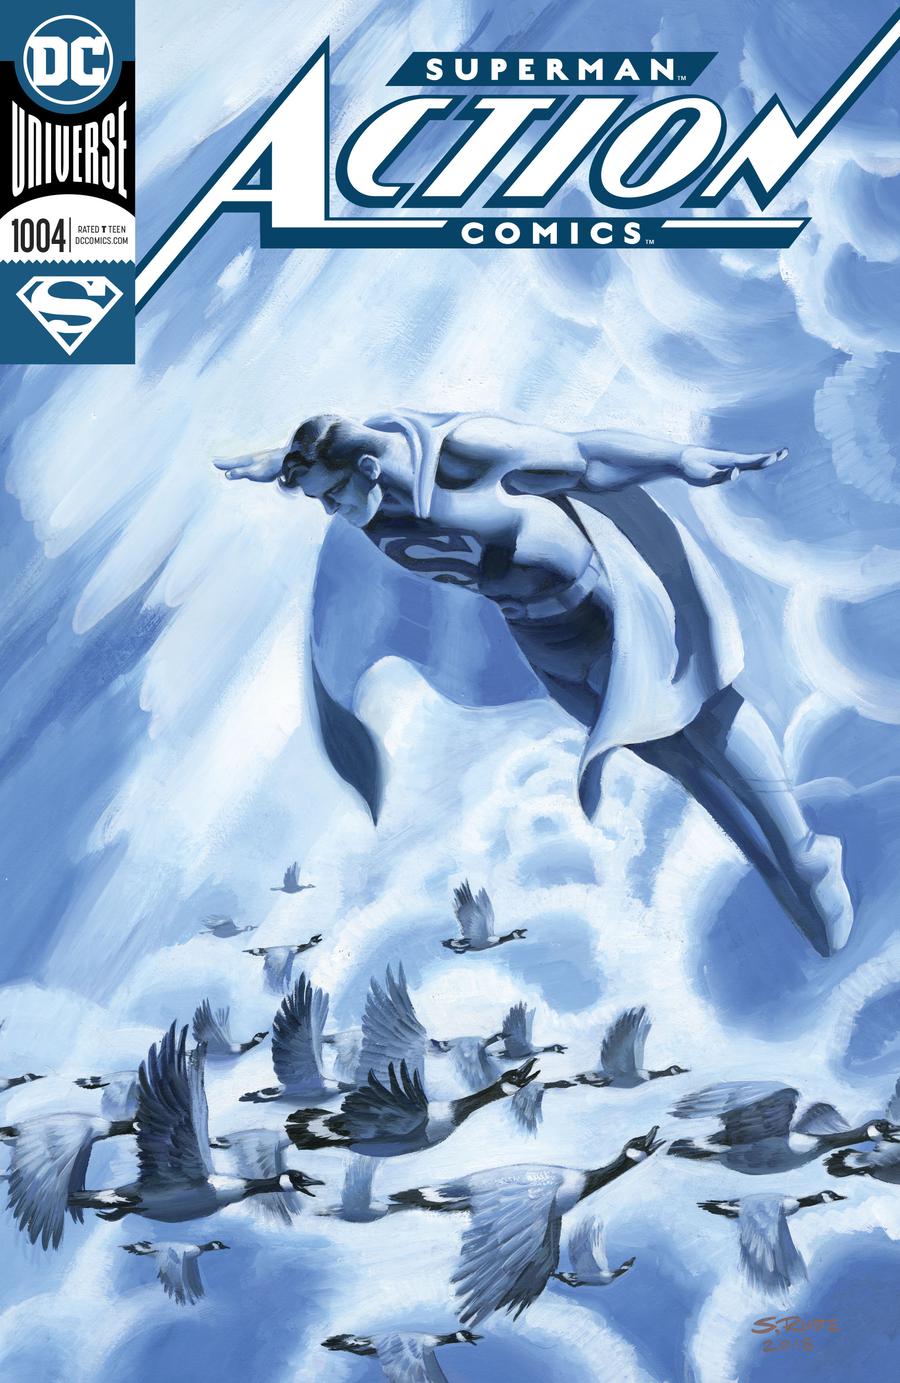 Action Comics Vol 2 #1004 Cover A Regular Steve Rude Enhanced Foil Cover